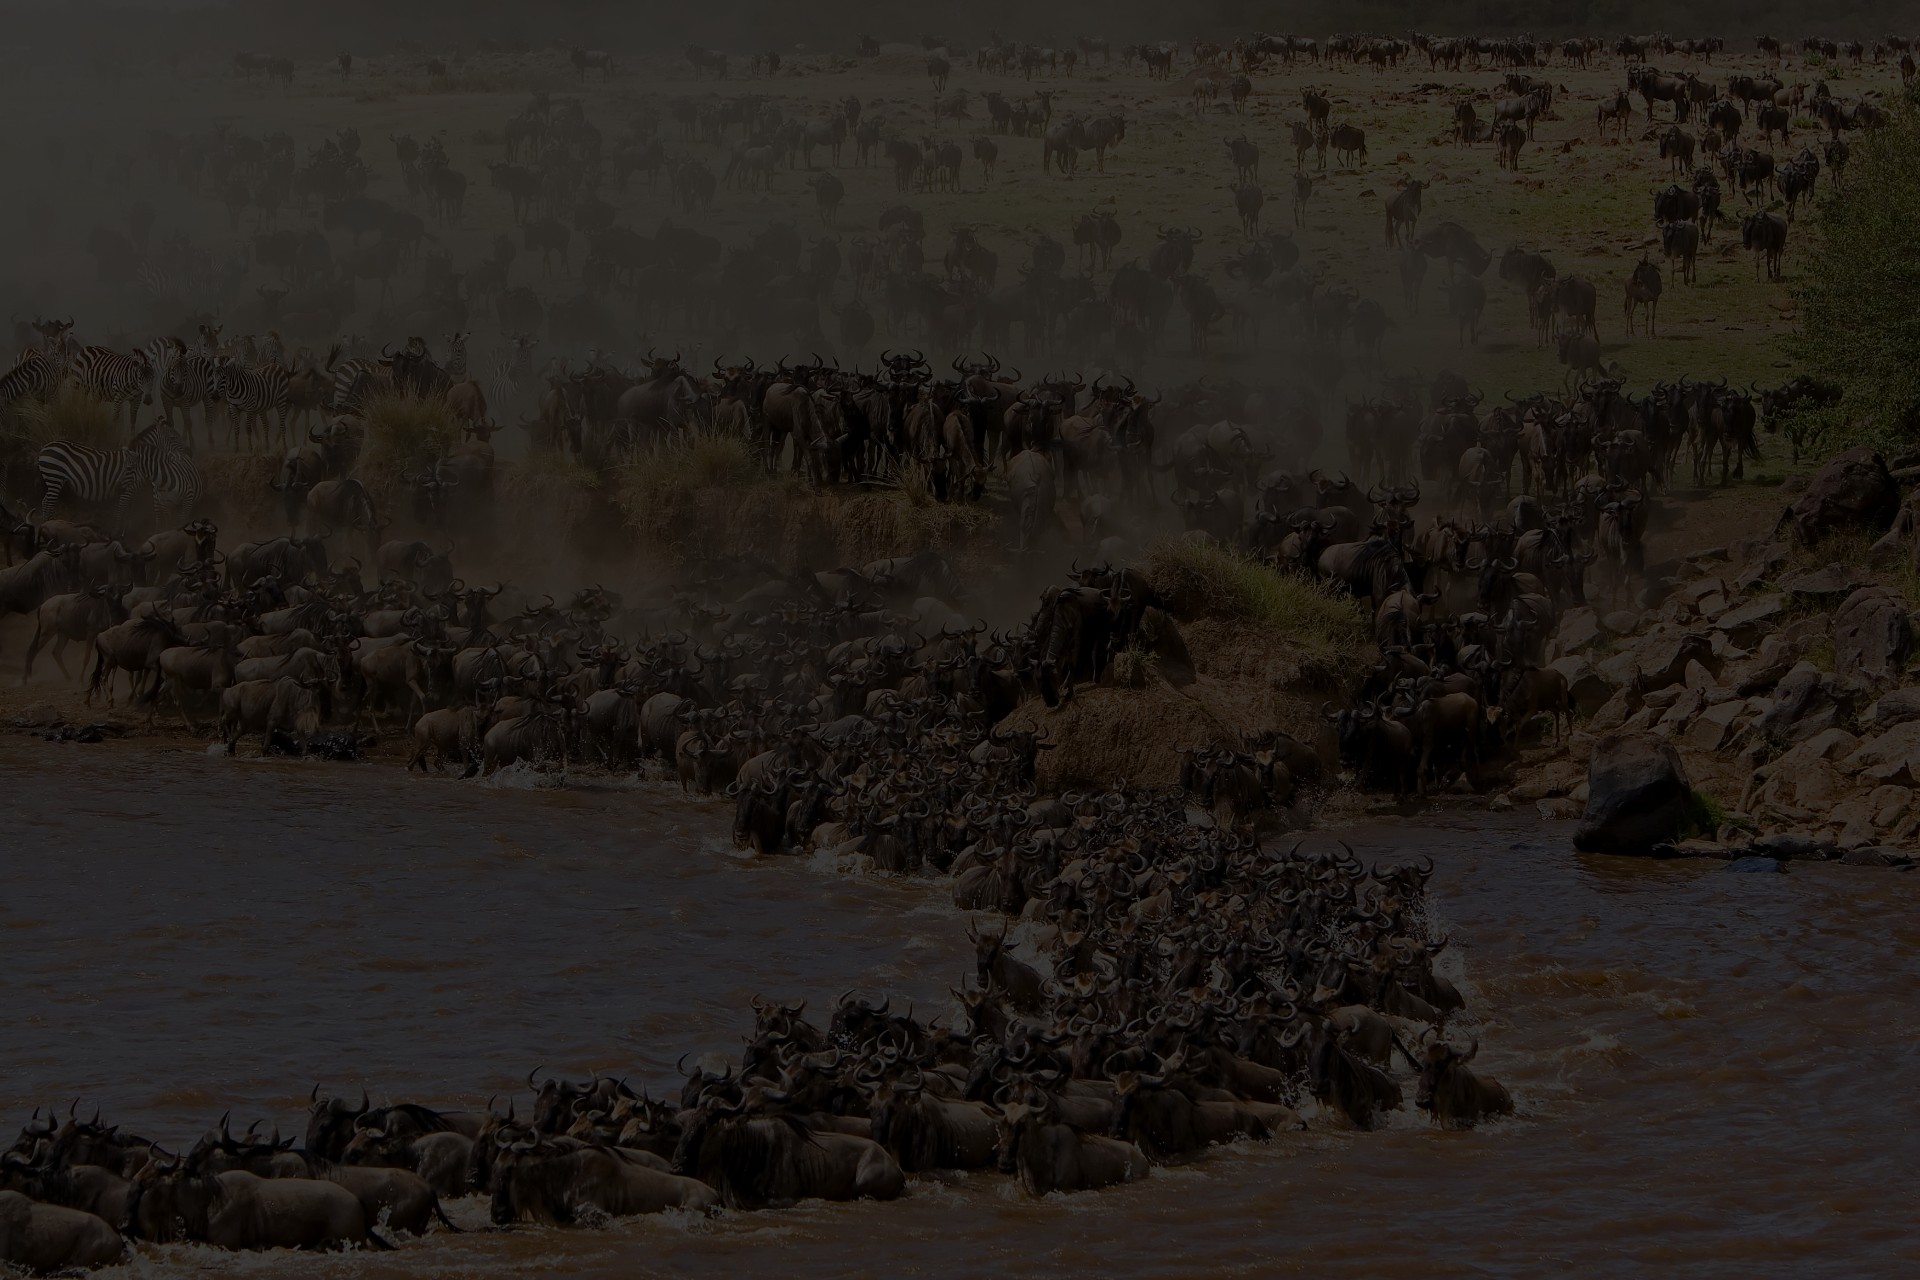 Masai mara safari joining